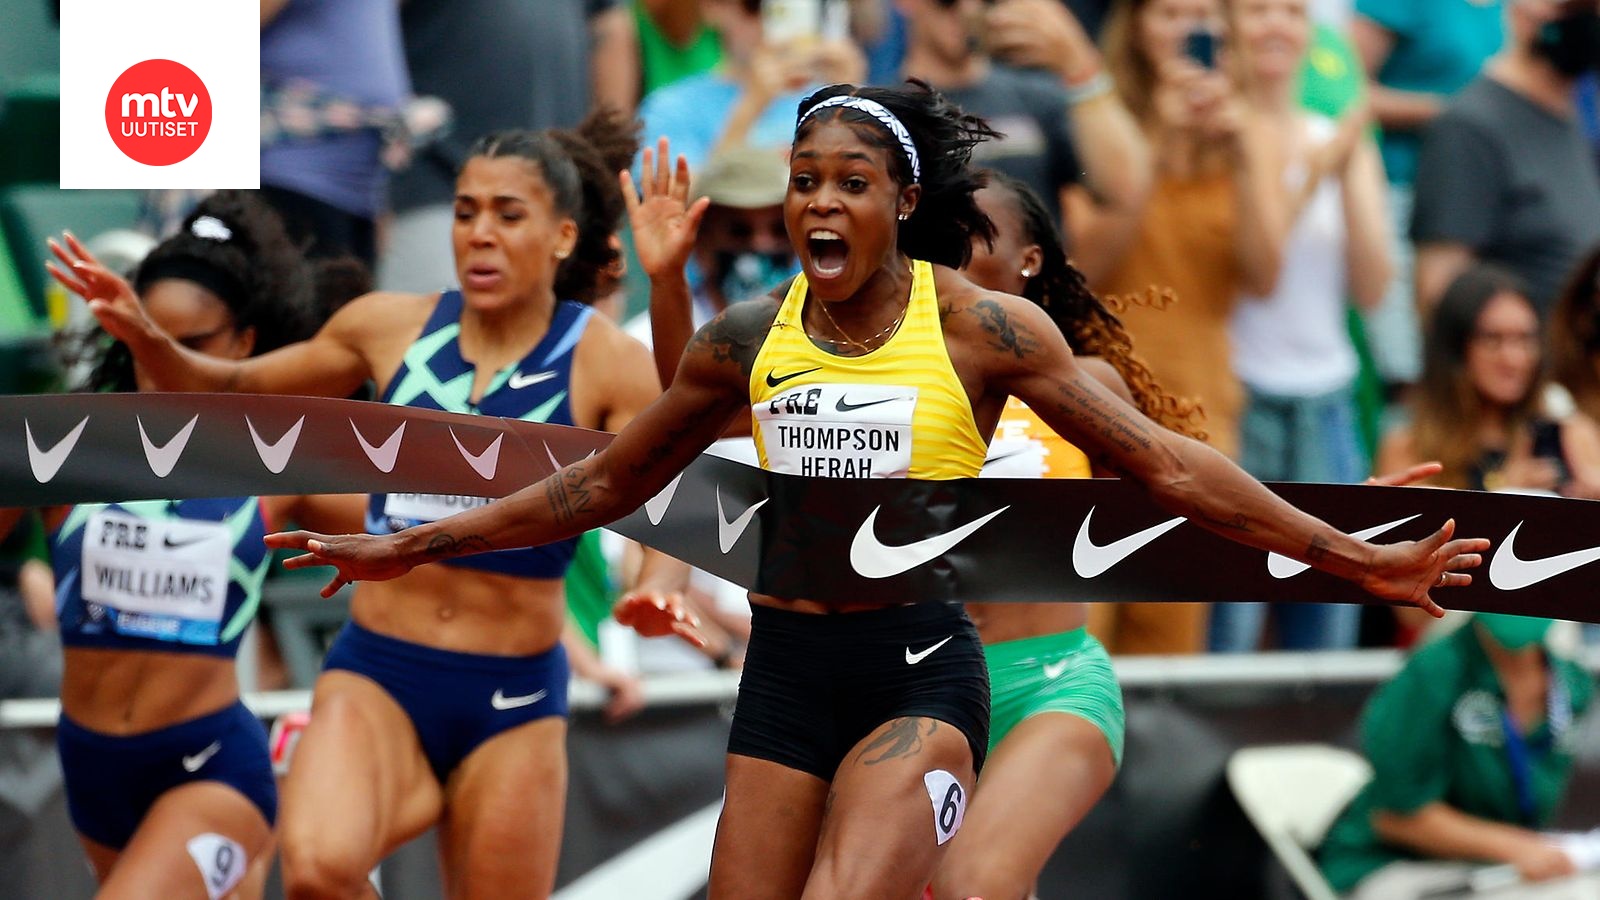 Jamaikalaistähti Elaine Thompson-Erah on valmis rikkomaan 100 metrin  maailmanennätyksen 